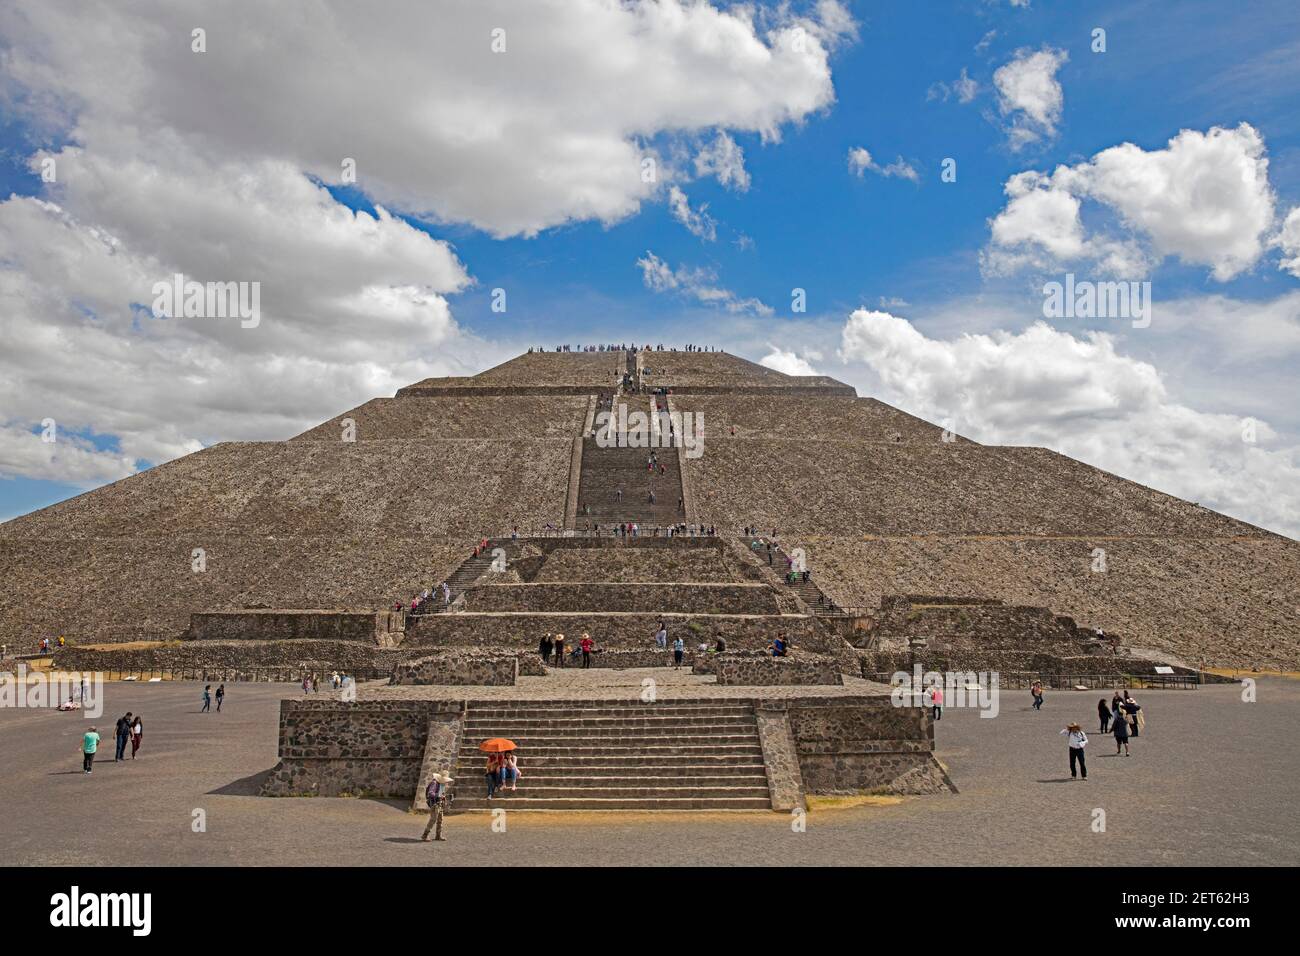 Pyramide du Soleil, Pirámide del sol, à Teotihuacán, l'une des plus grandes pyramides du monde, le Mexique Banque D'Images